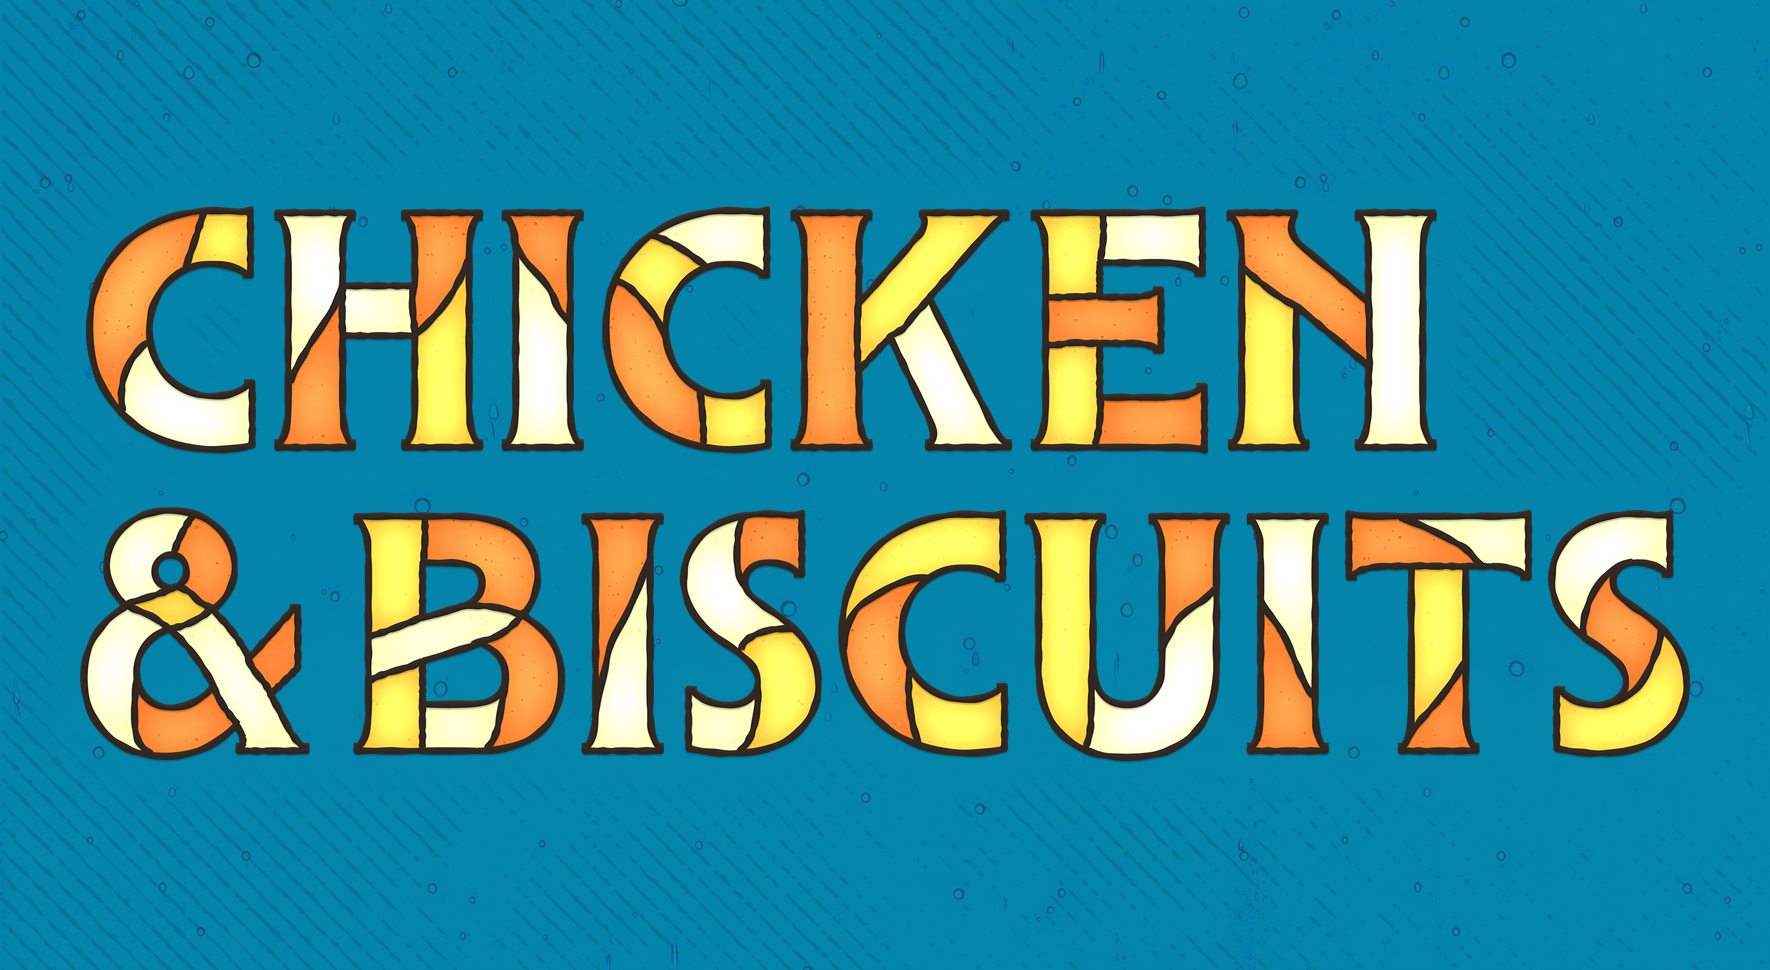 Chicken & Biscuits Graphic